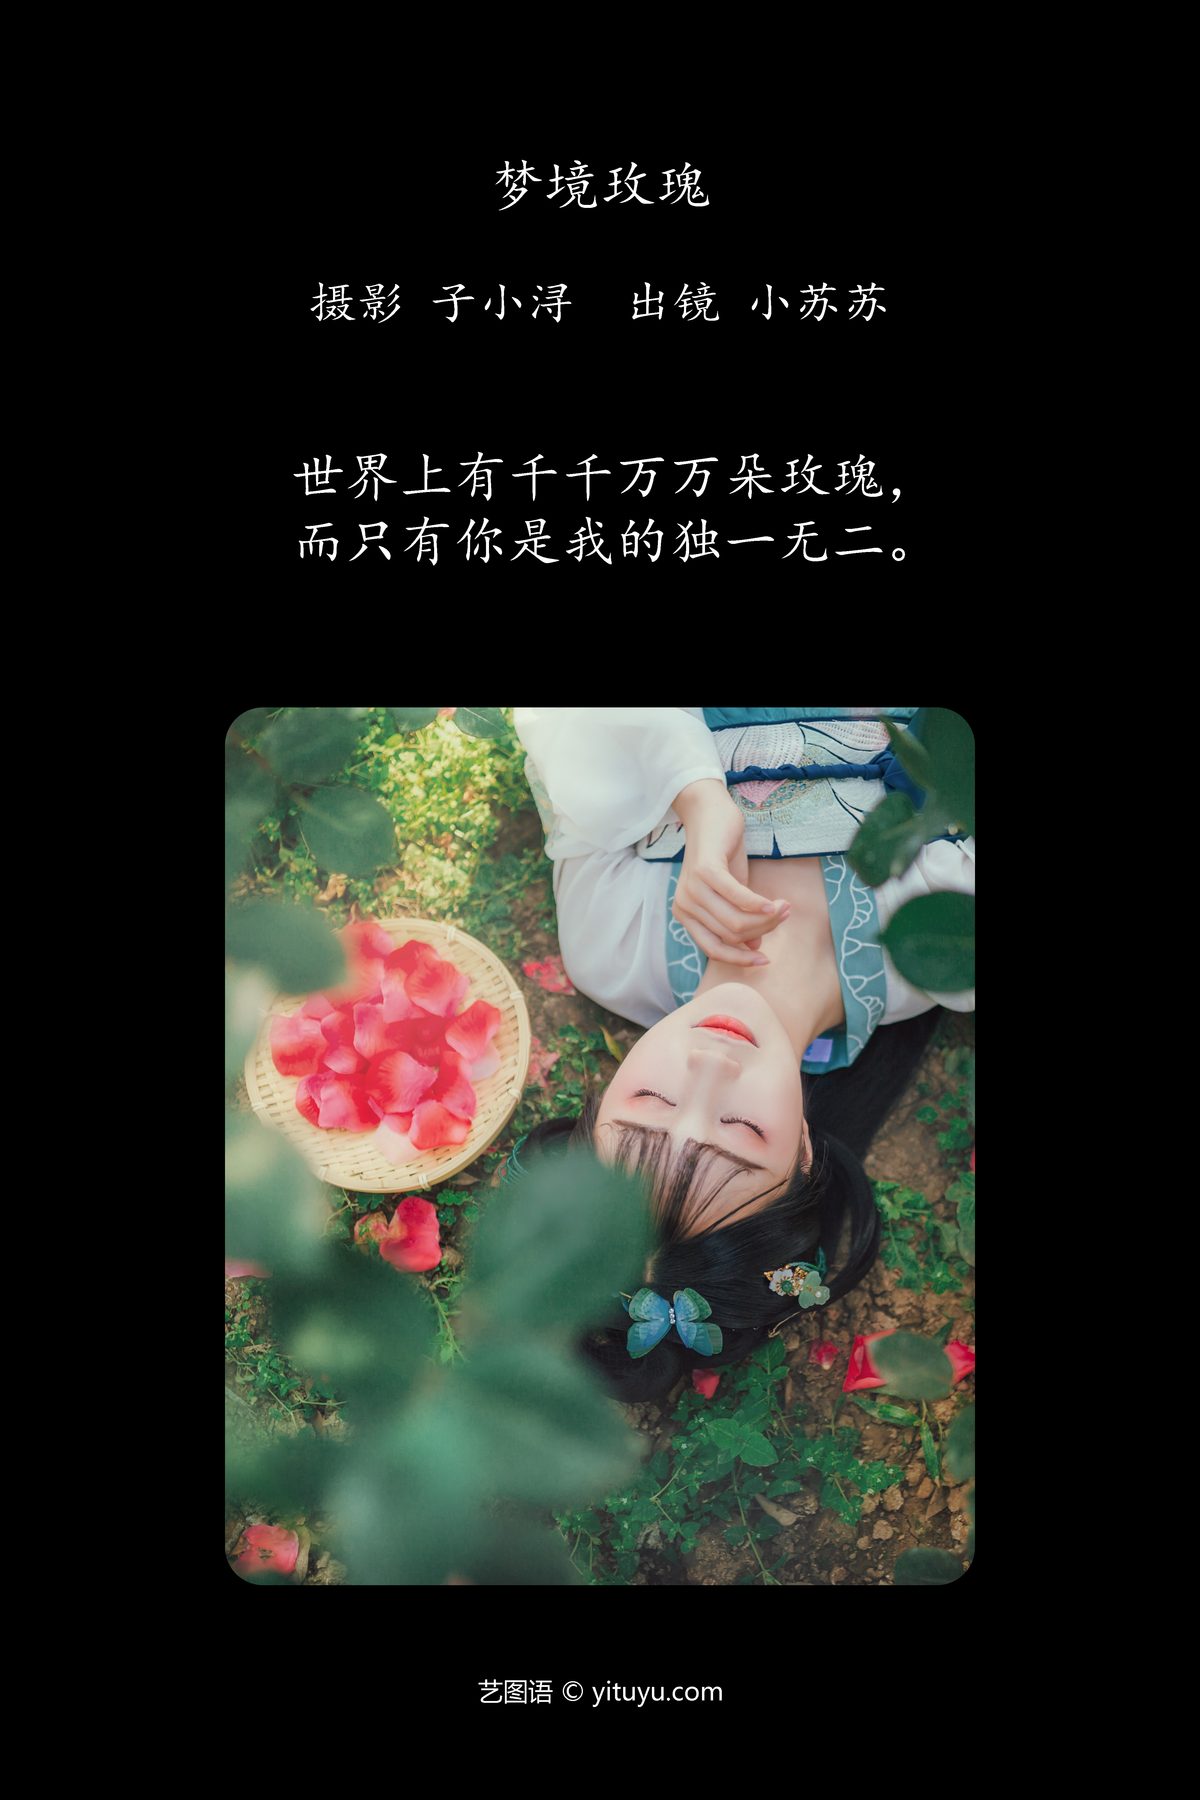 YiTuYu艺图语 Vol 4170 Qi Luo Sheng De Xiao Su Su 0002 7113891133.jpg